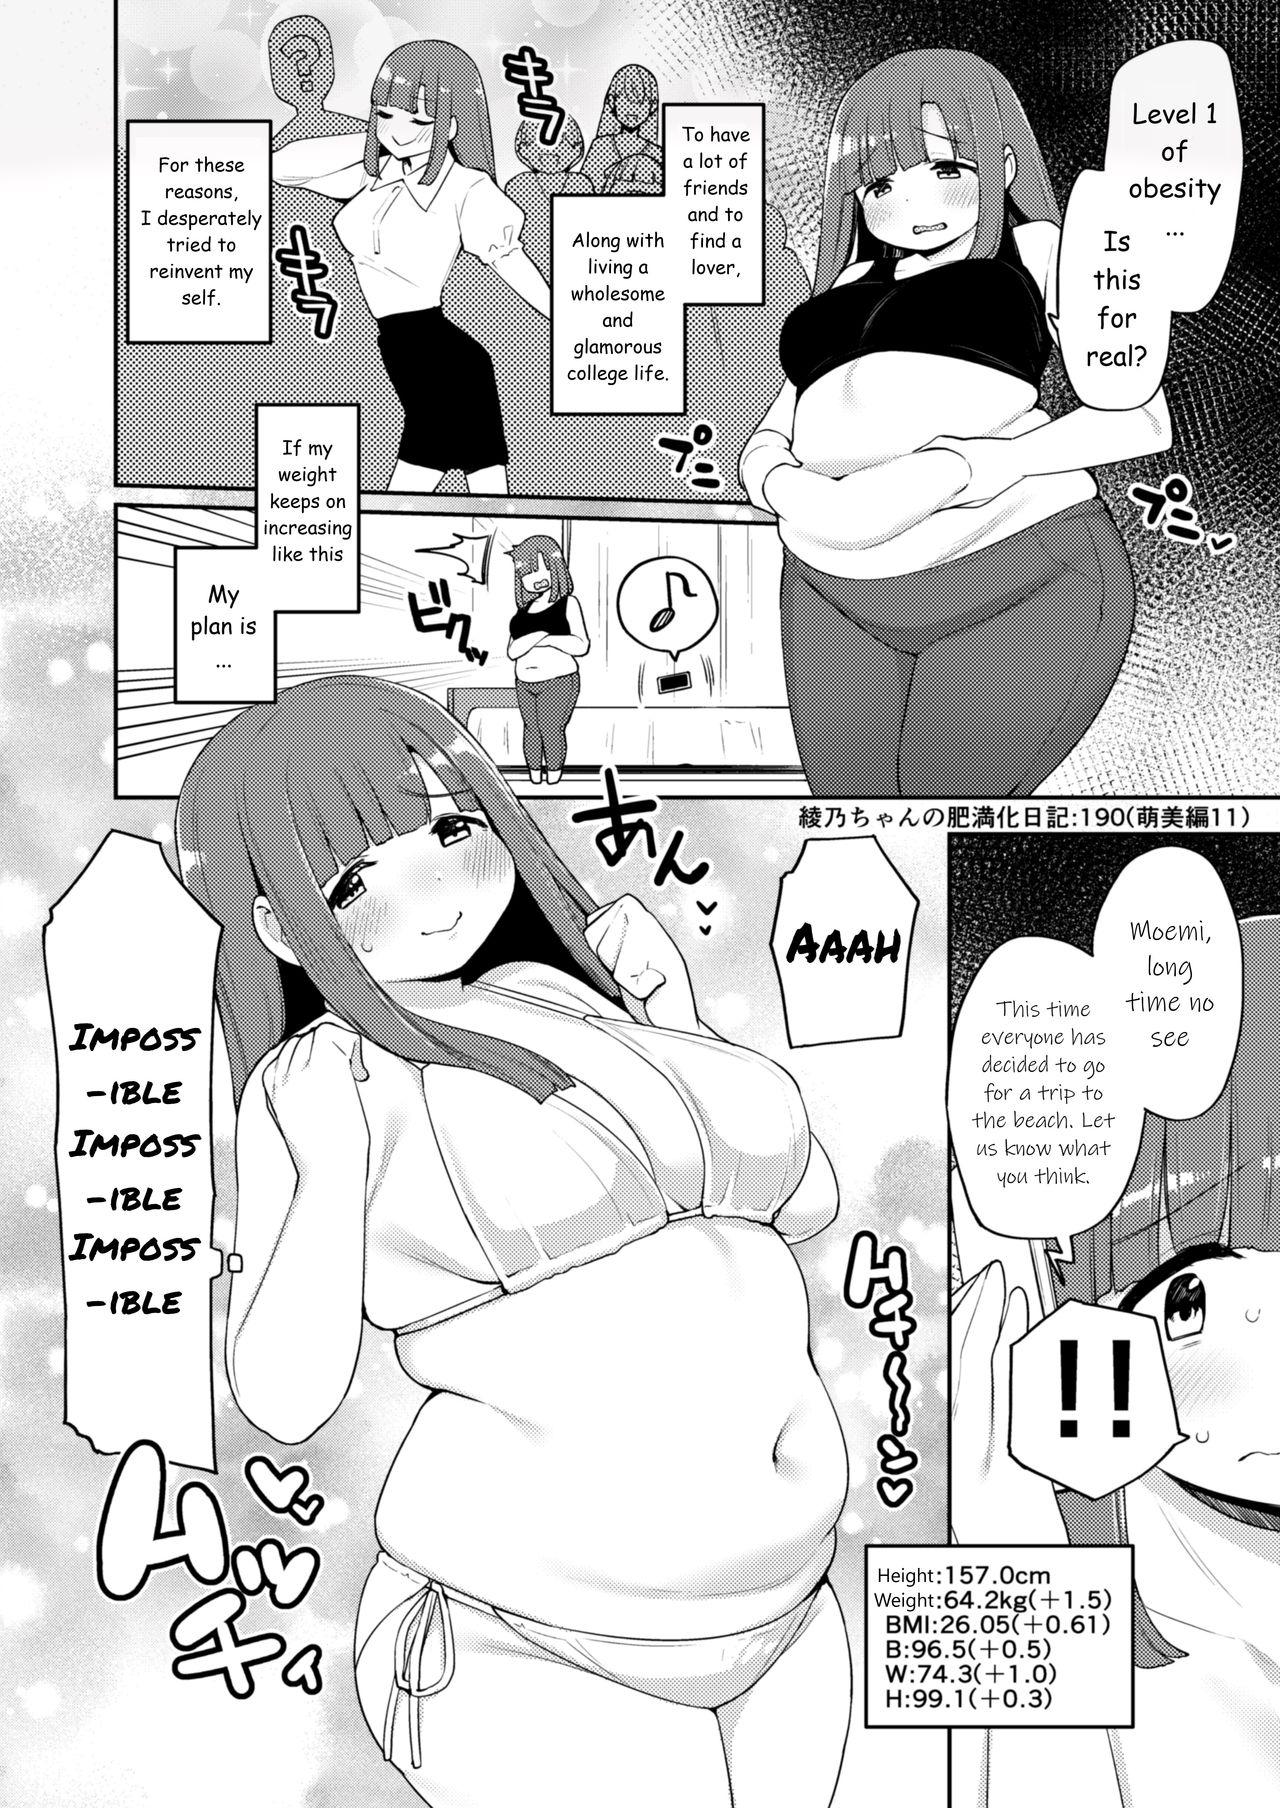 Buttfucking Ayano's Weight Gain Diary Cruising - Page 190